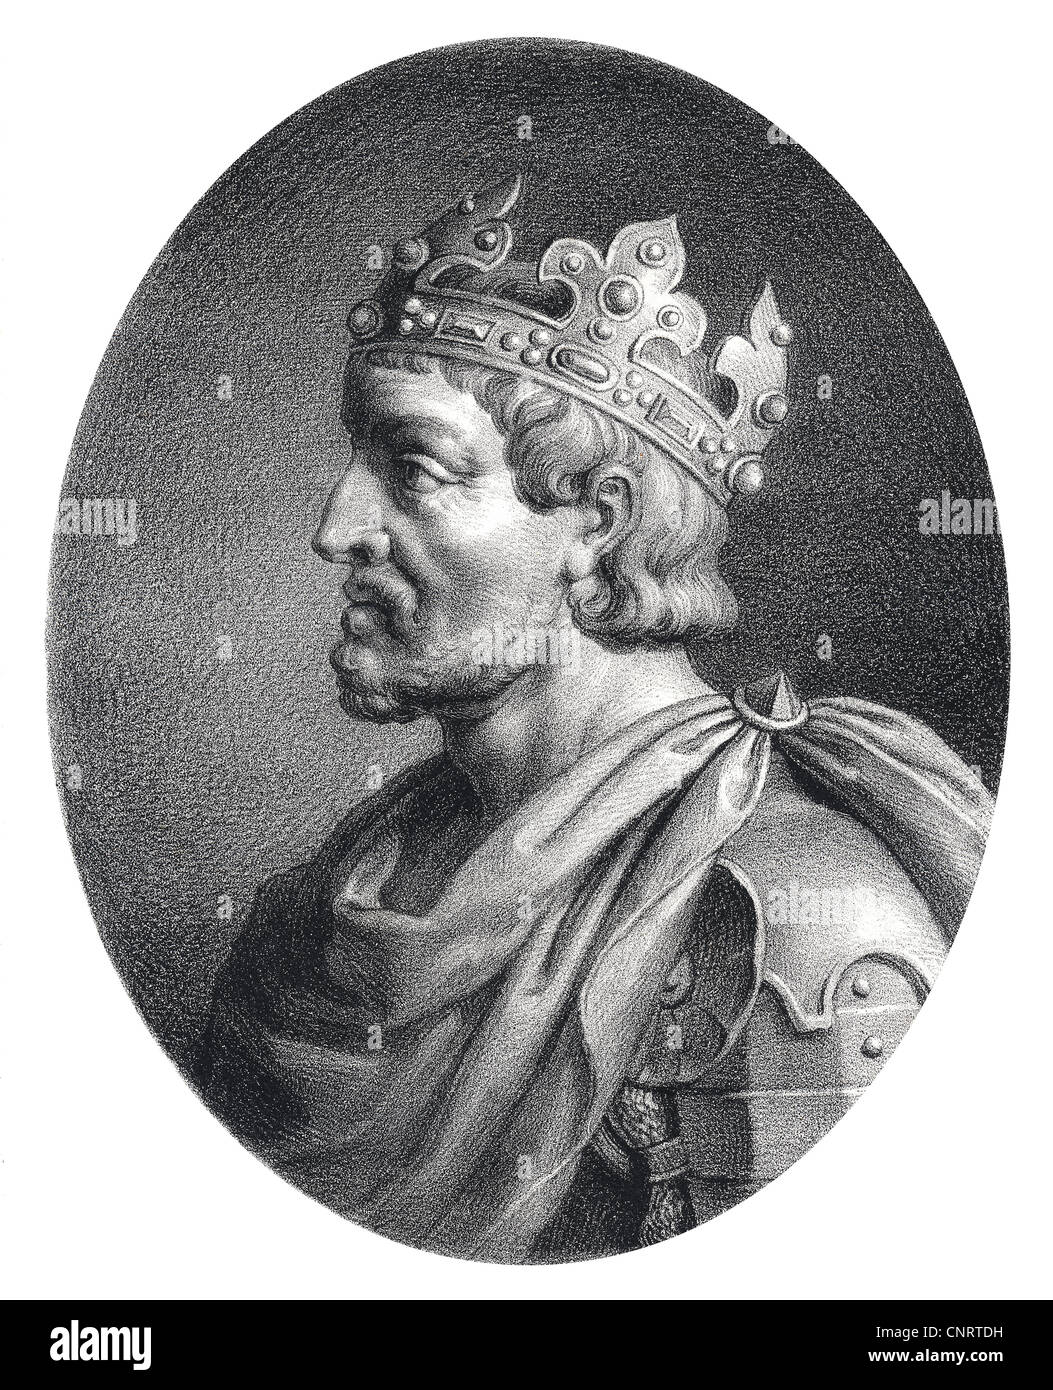 Französische Aristokrat Pepin le Bref oder Pippin der kurze, der Frankenkönig Pippin der jüngere oder Pippin III Stockfoto